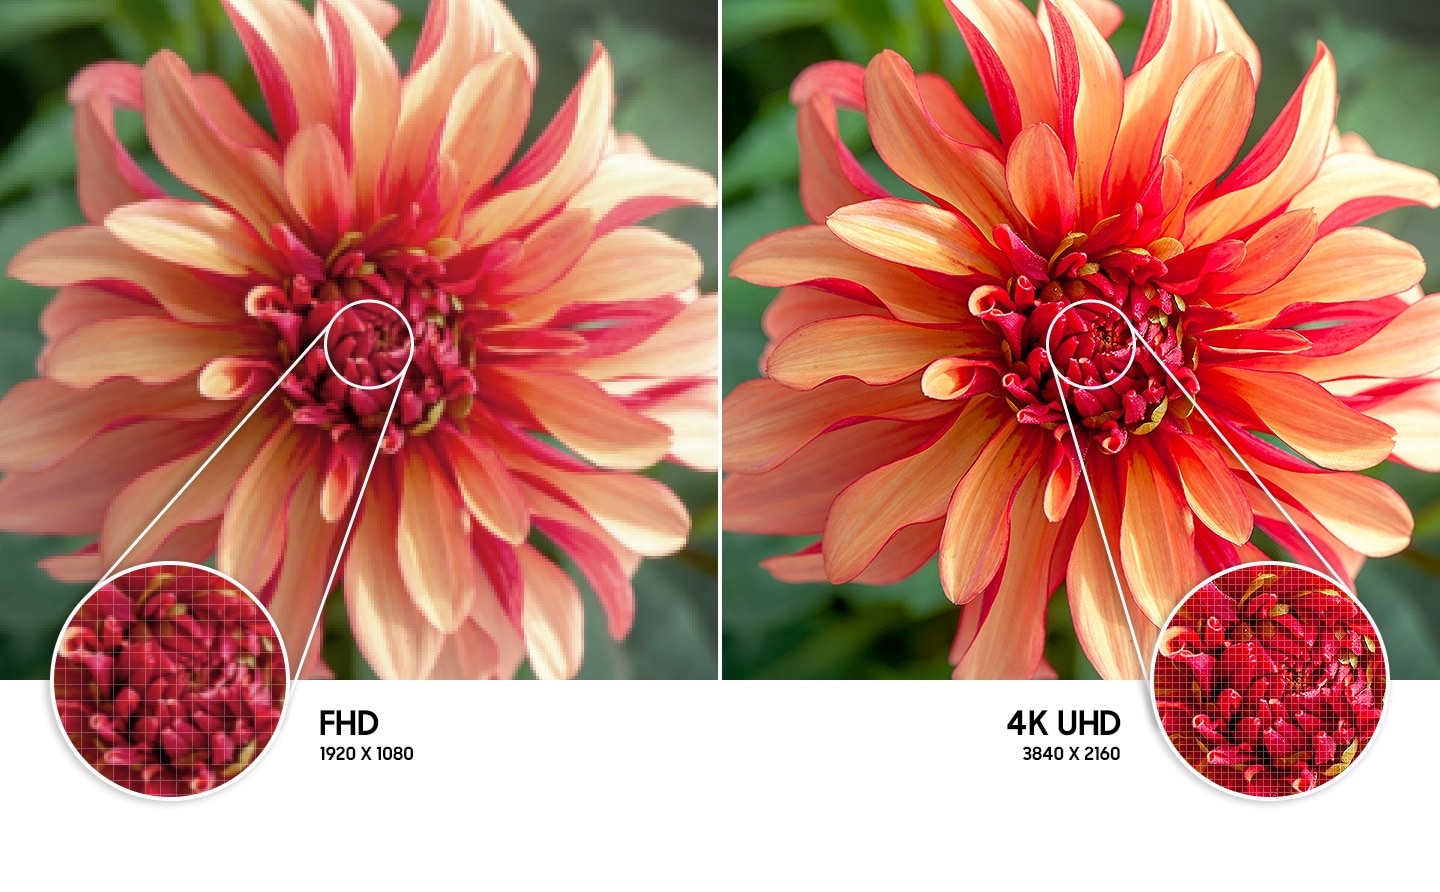 Gambar bunga di sebelah kanan dibandingkan di sebelah kiri menunjukkan resolusi gambar berkualitas lebih tinggi yang dibuat oleh teknologi 4K UHD.